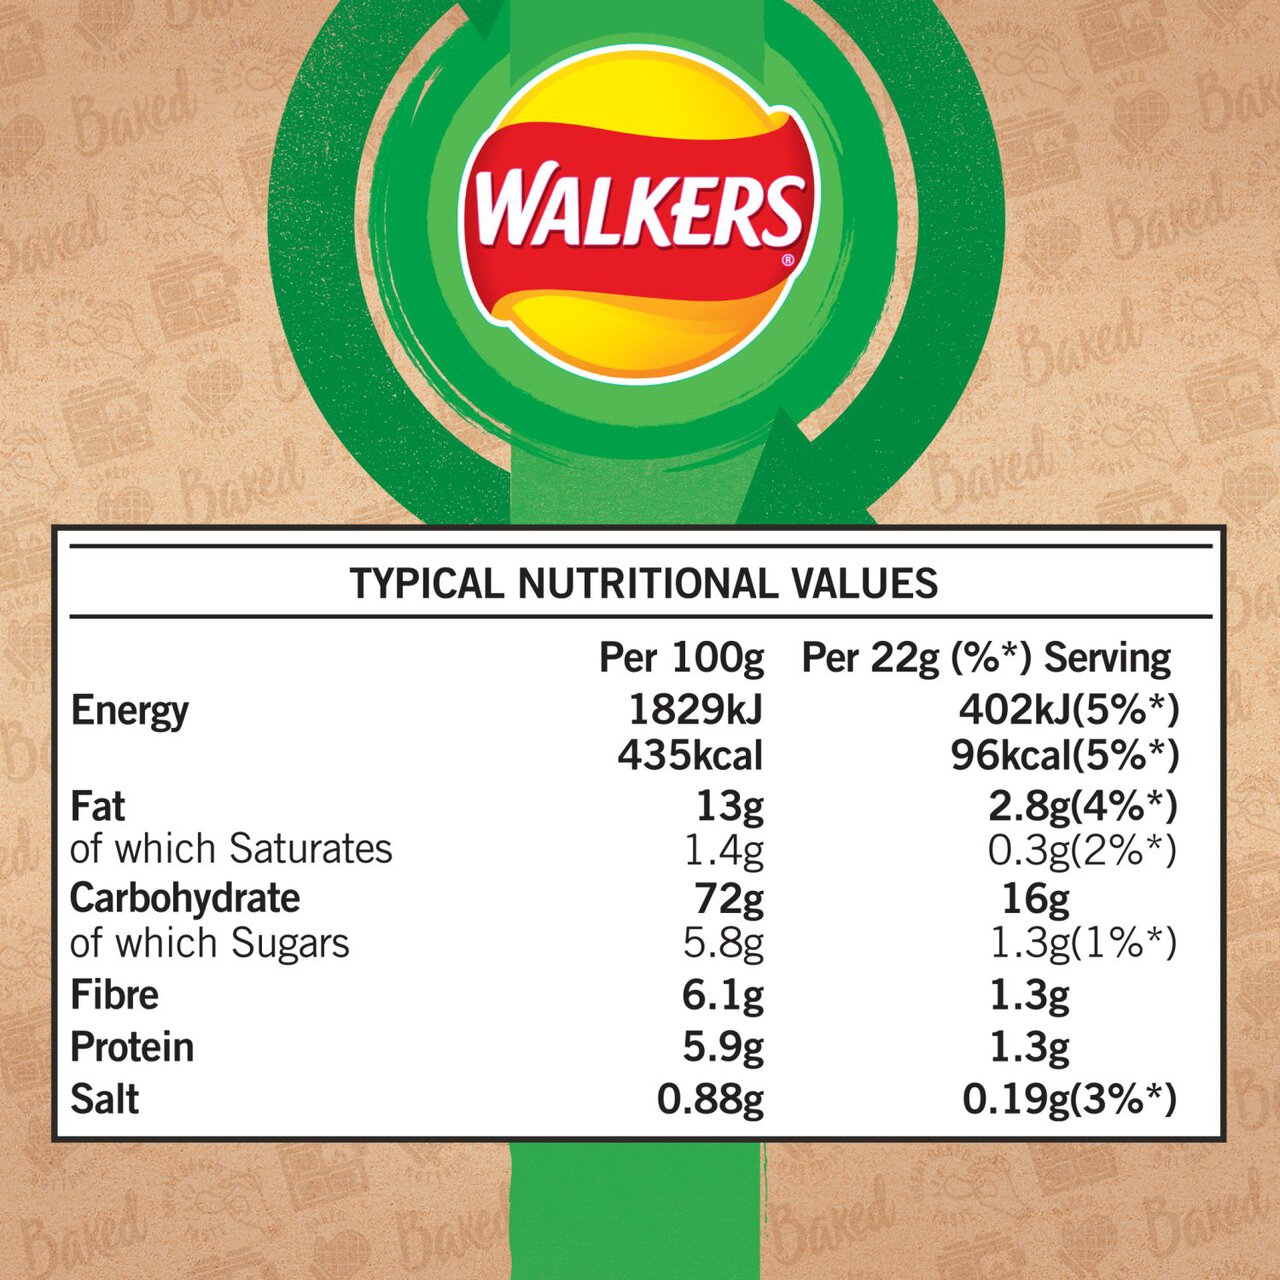 Walkers Baked Salt & Vinegar Multipack Snacks 6 per pack